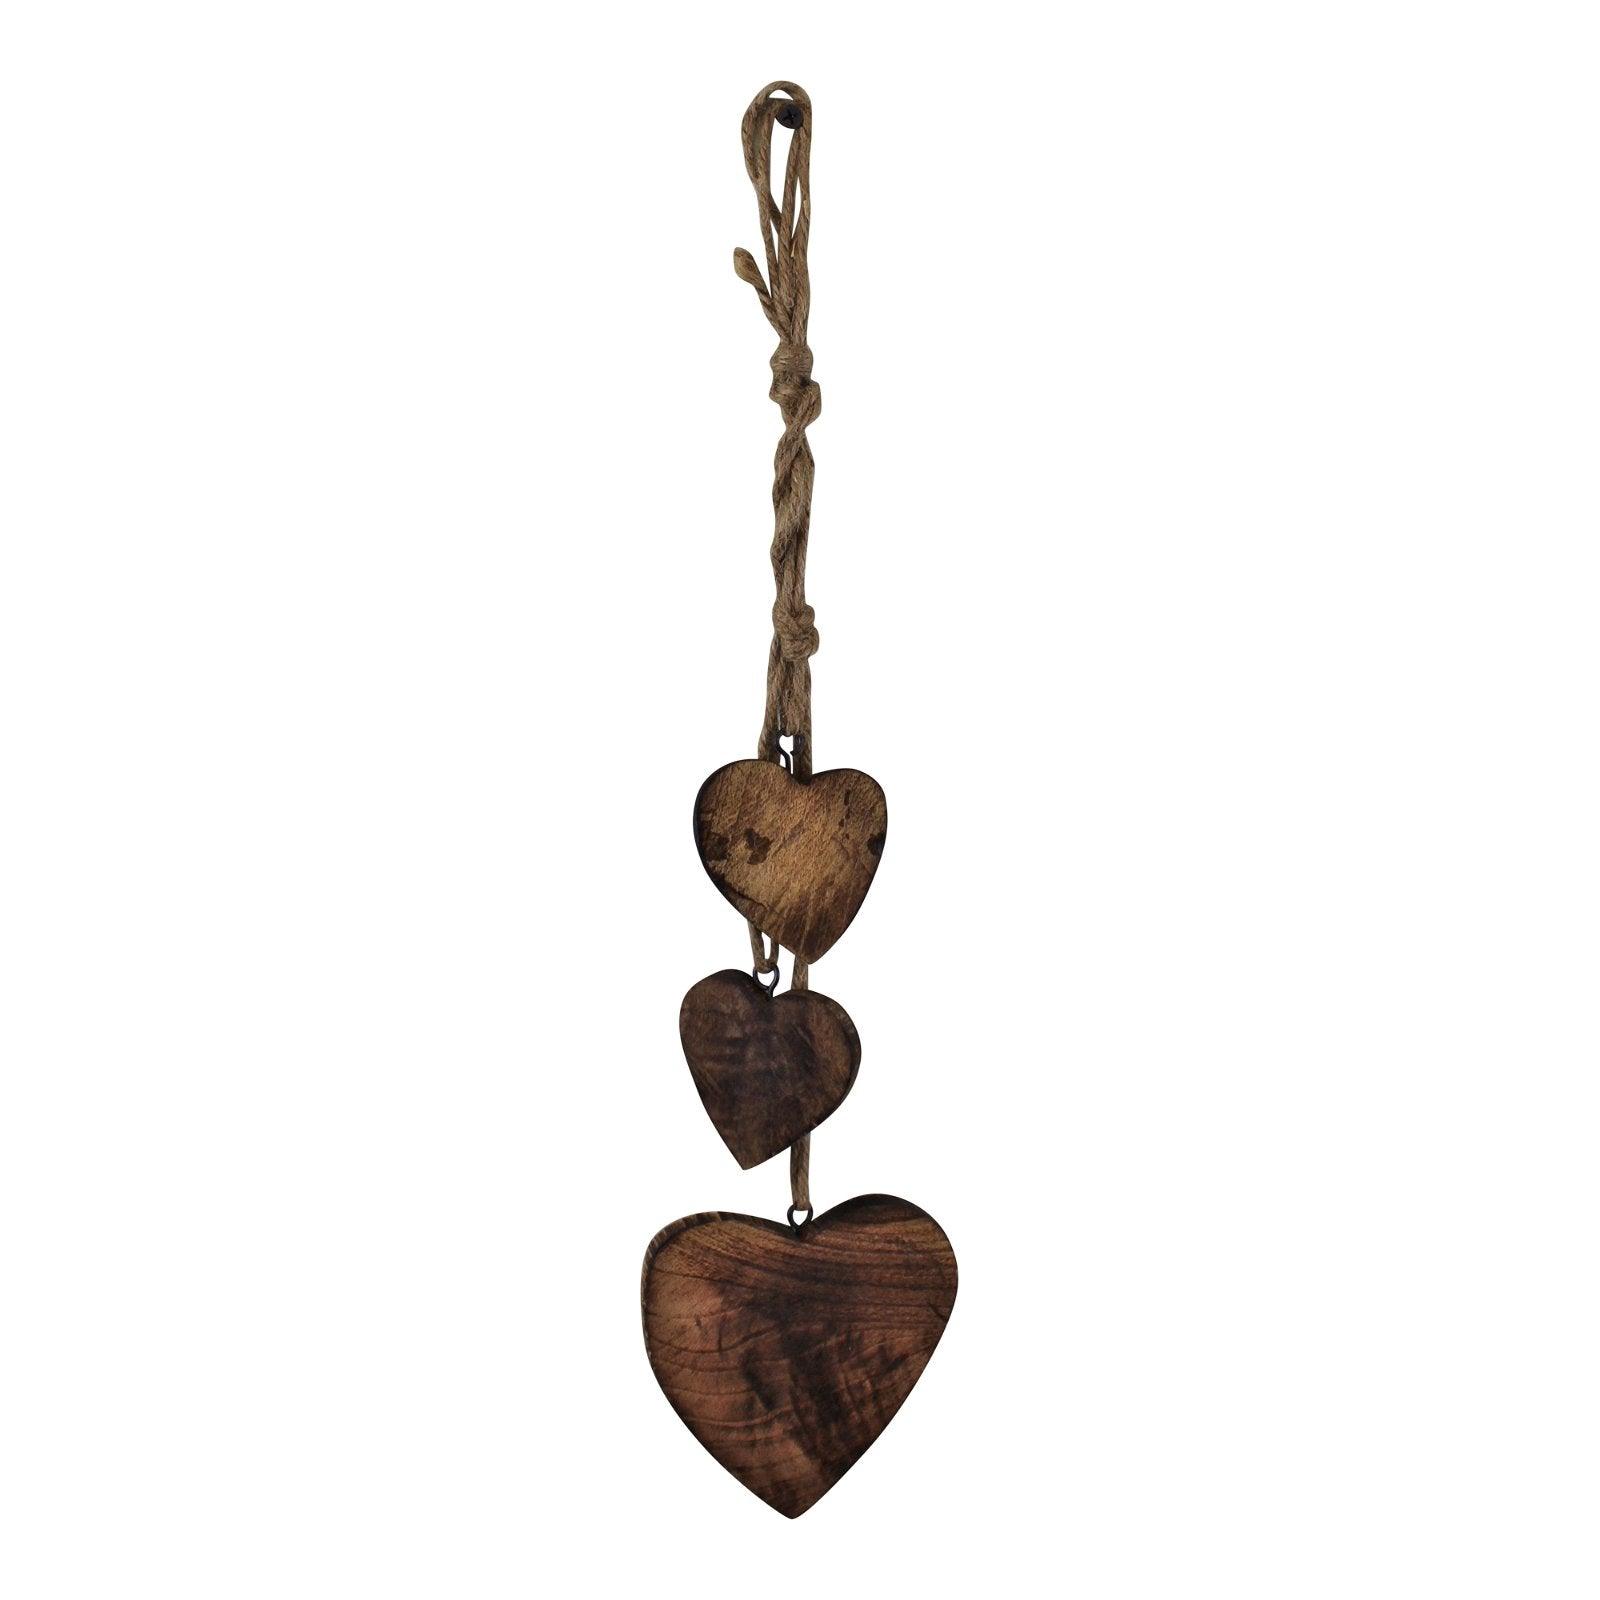 View Three Hanging Wooden Heart Decoration Dark Wood information